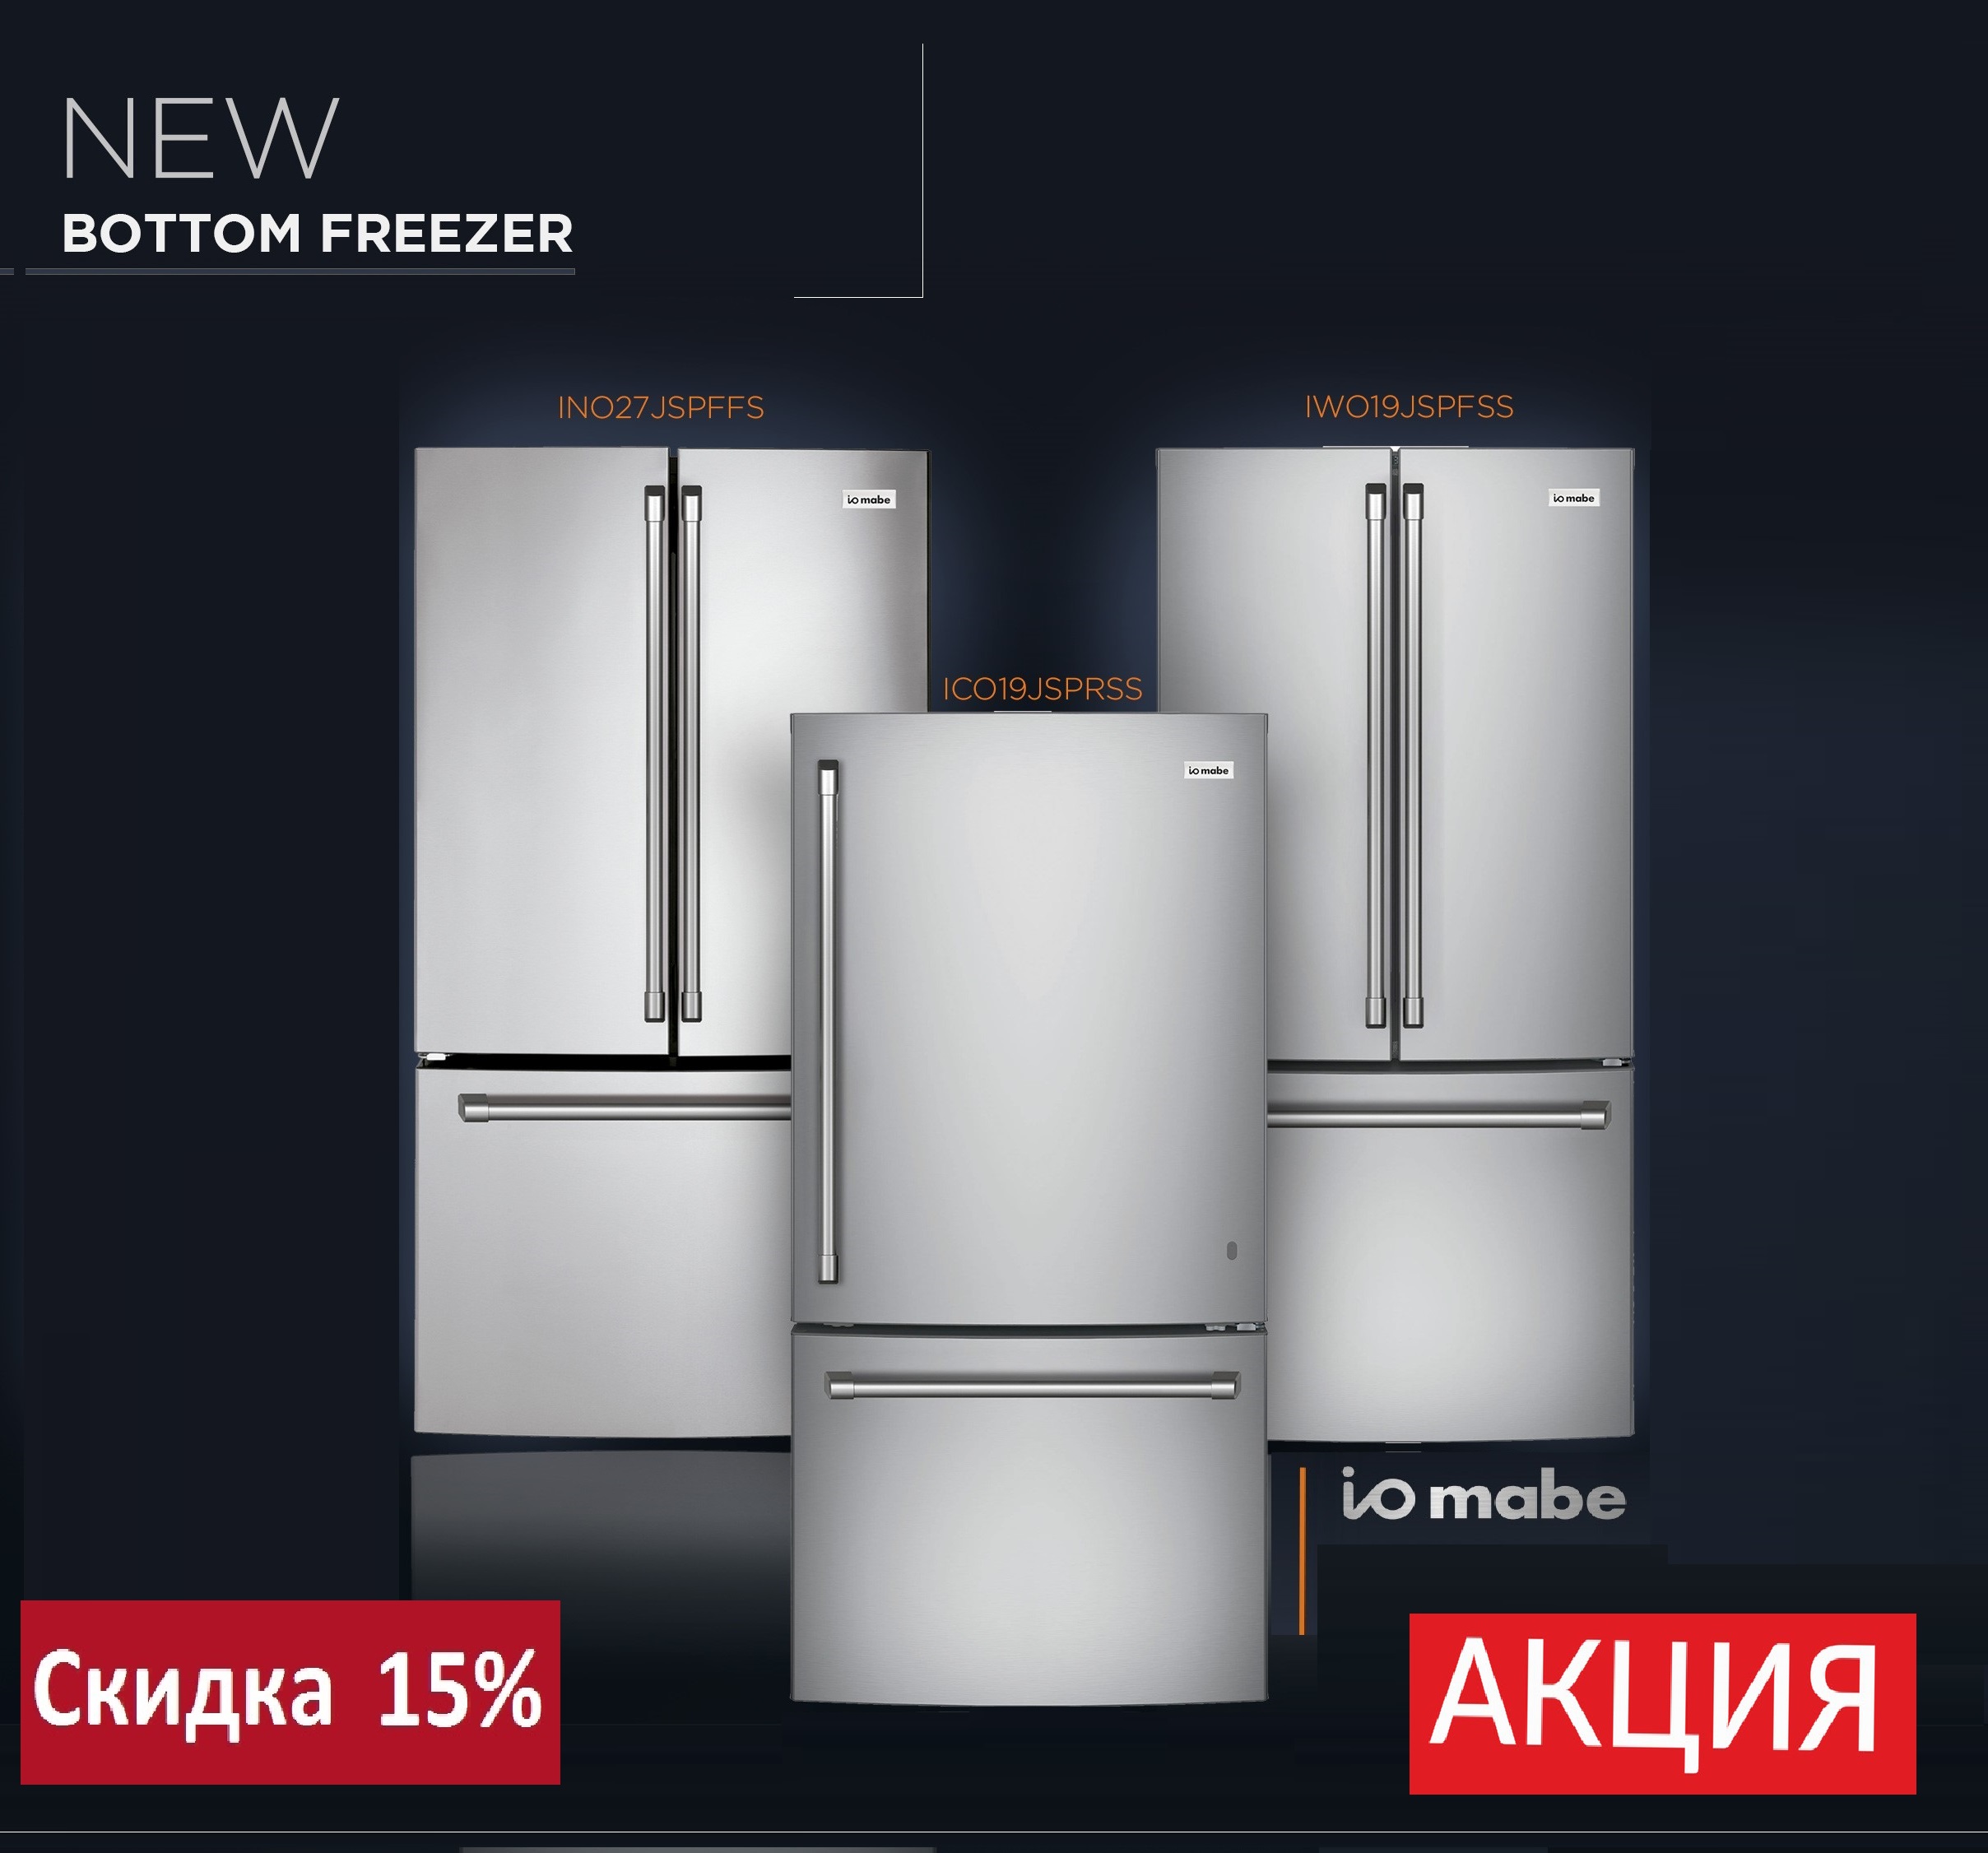 Акция «СКИДКА 15% на холодильники IO MABE серии BOTTOM FREEZER»